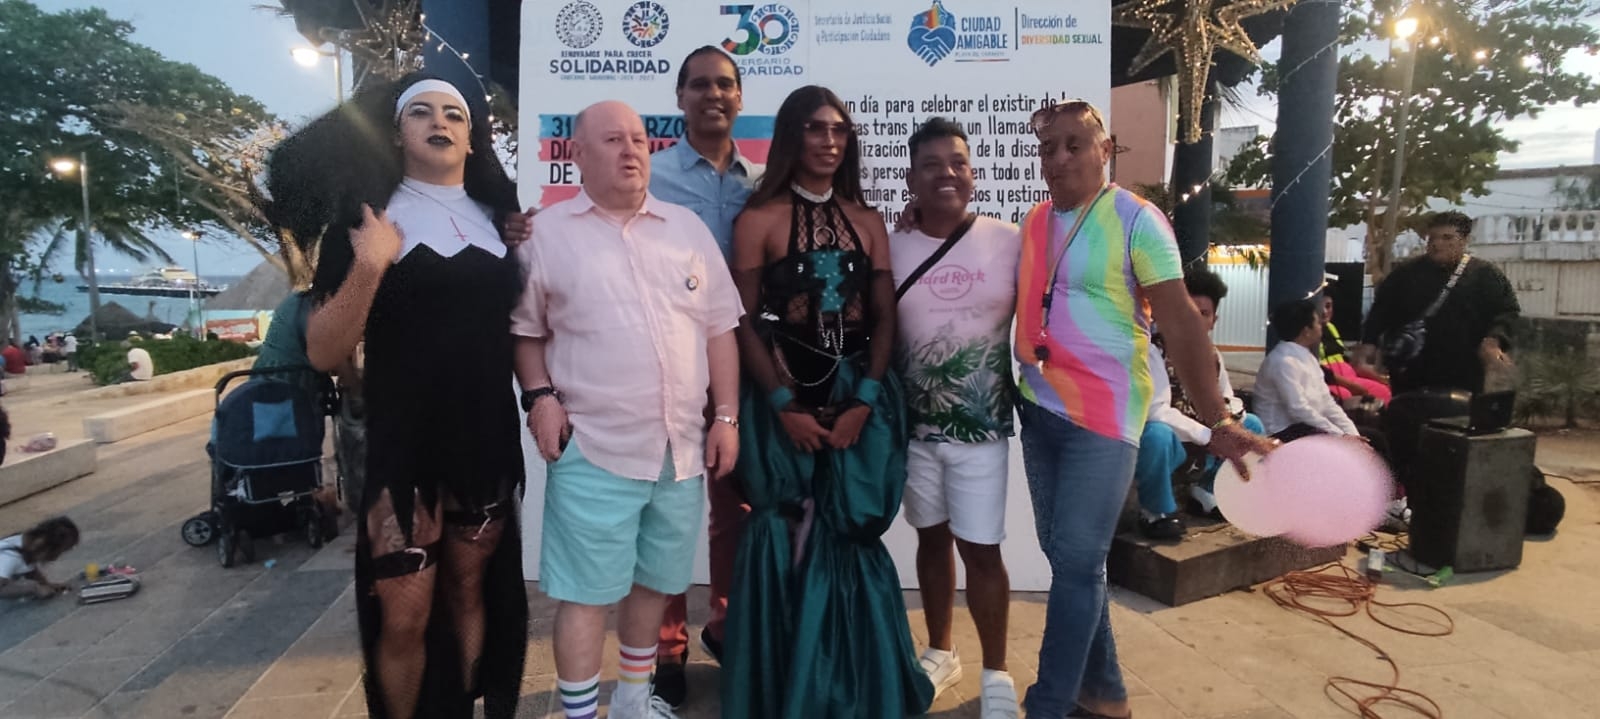 Conmemoran visibilidad a la comunidad trans en Playa del Carmen